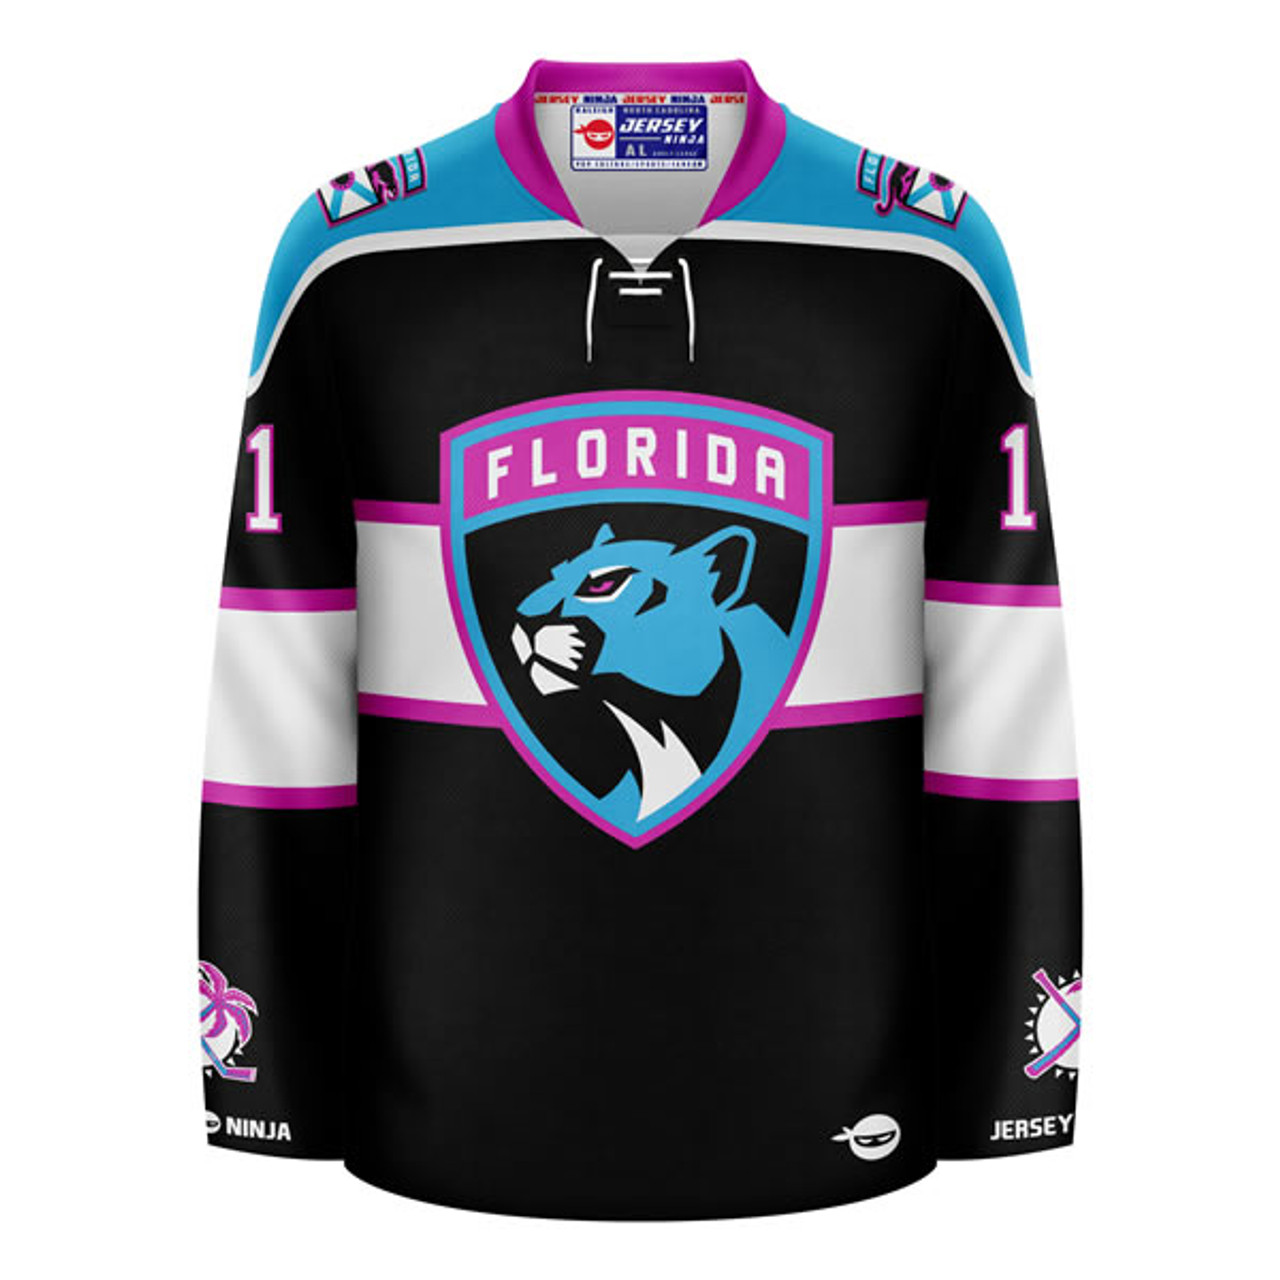 Florida Panthers x Miami Vice Jonahtan Huberdeau Mashup Hockey Jersey